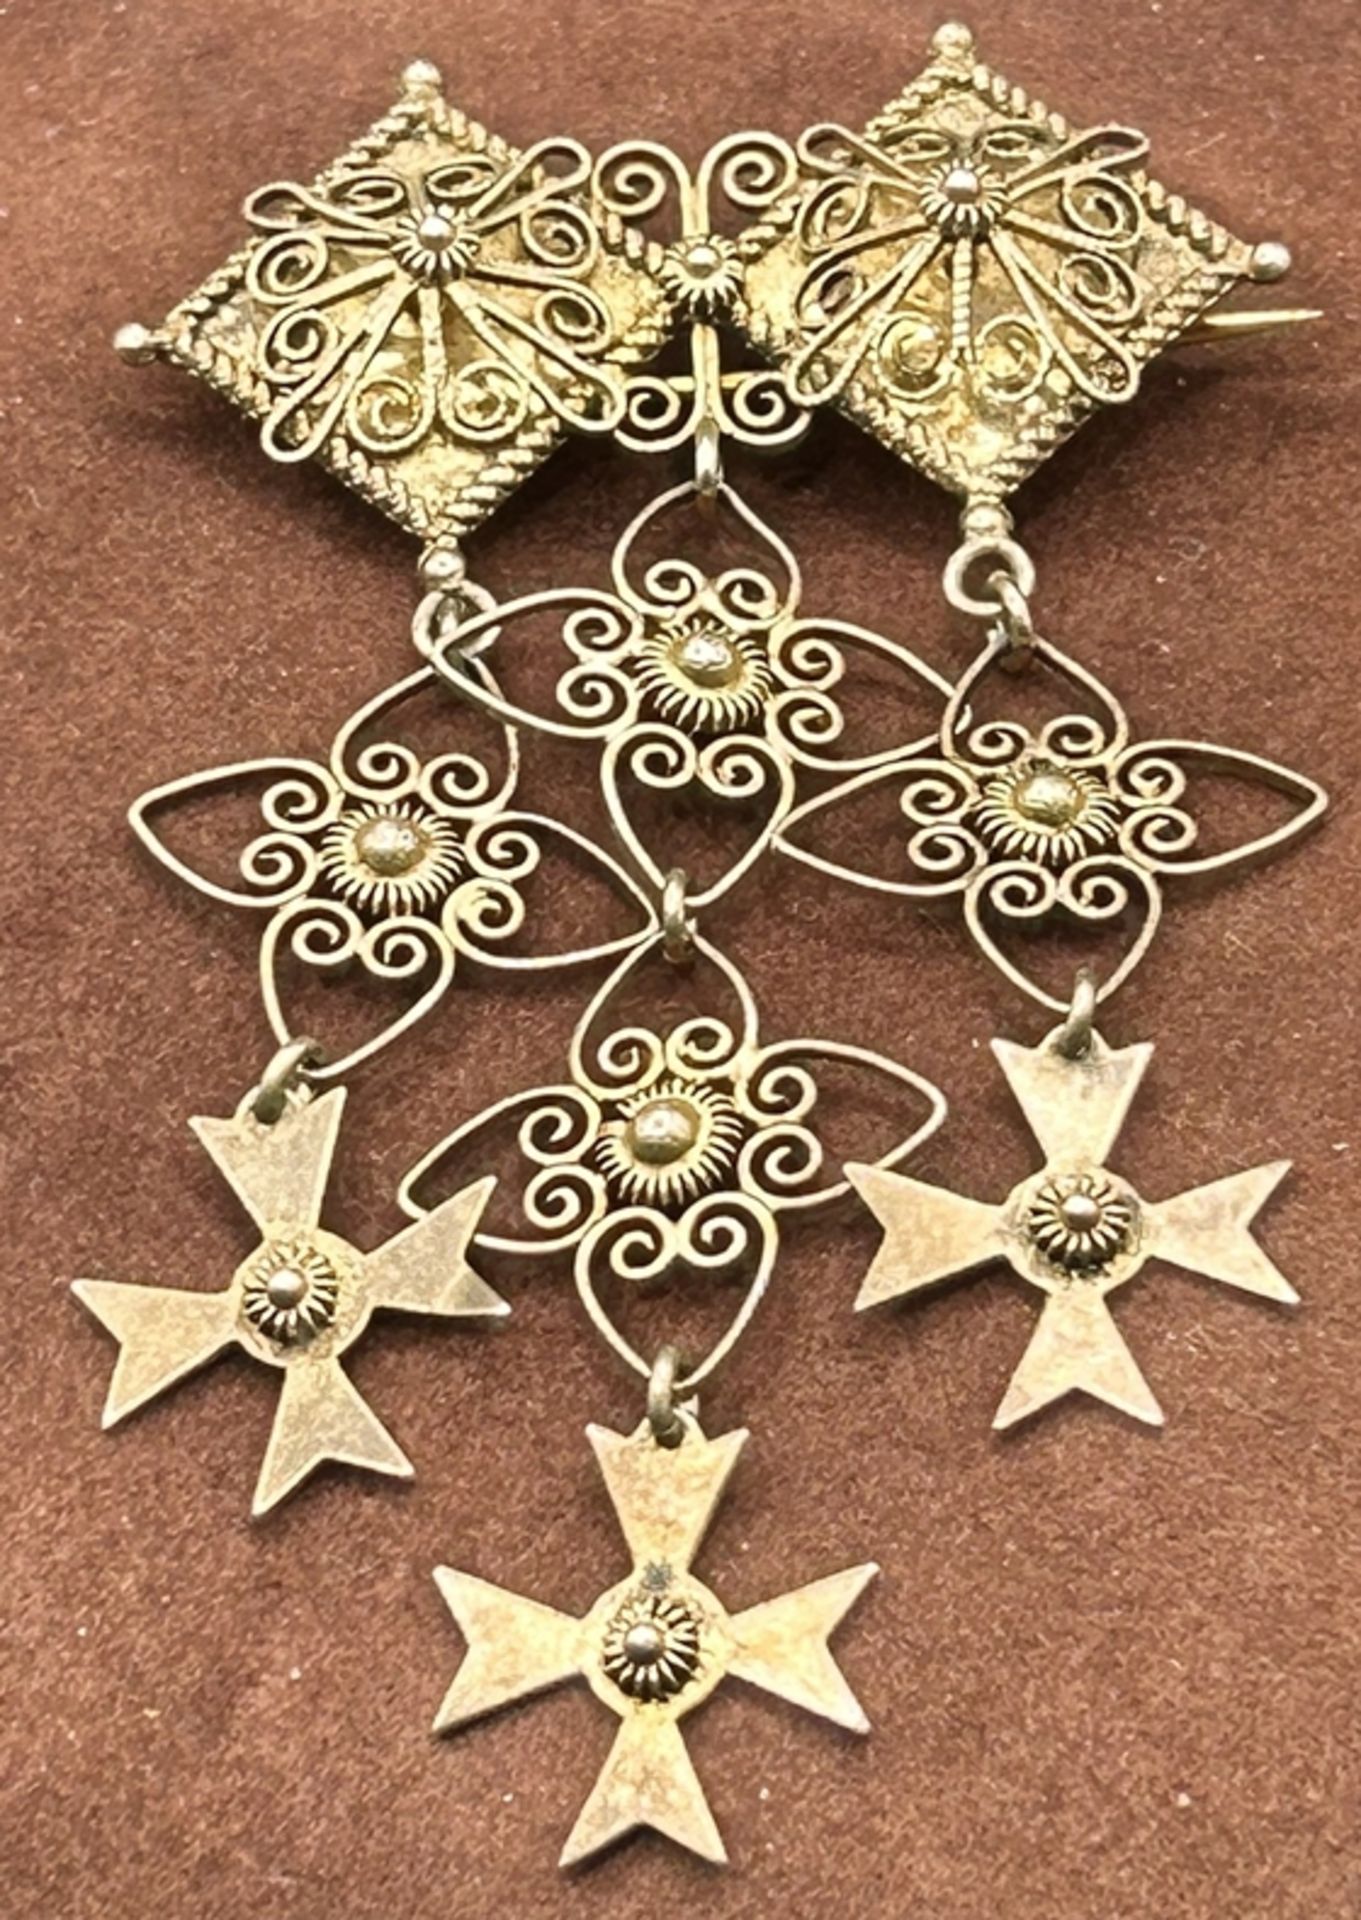 gr. Brosche mit 3 Kreuzanhängern, Silber-830- vergoldet, L-ca. 8 cm, B-5 cm,13,4 gr.  gemarkt "K.R.